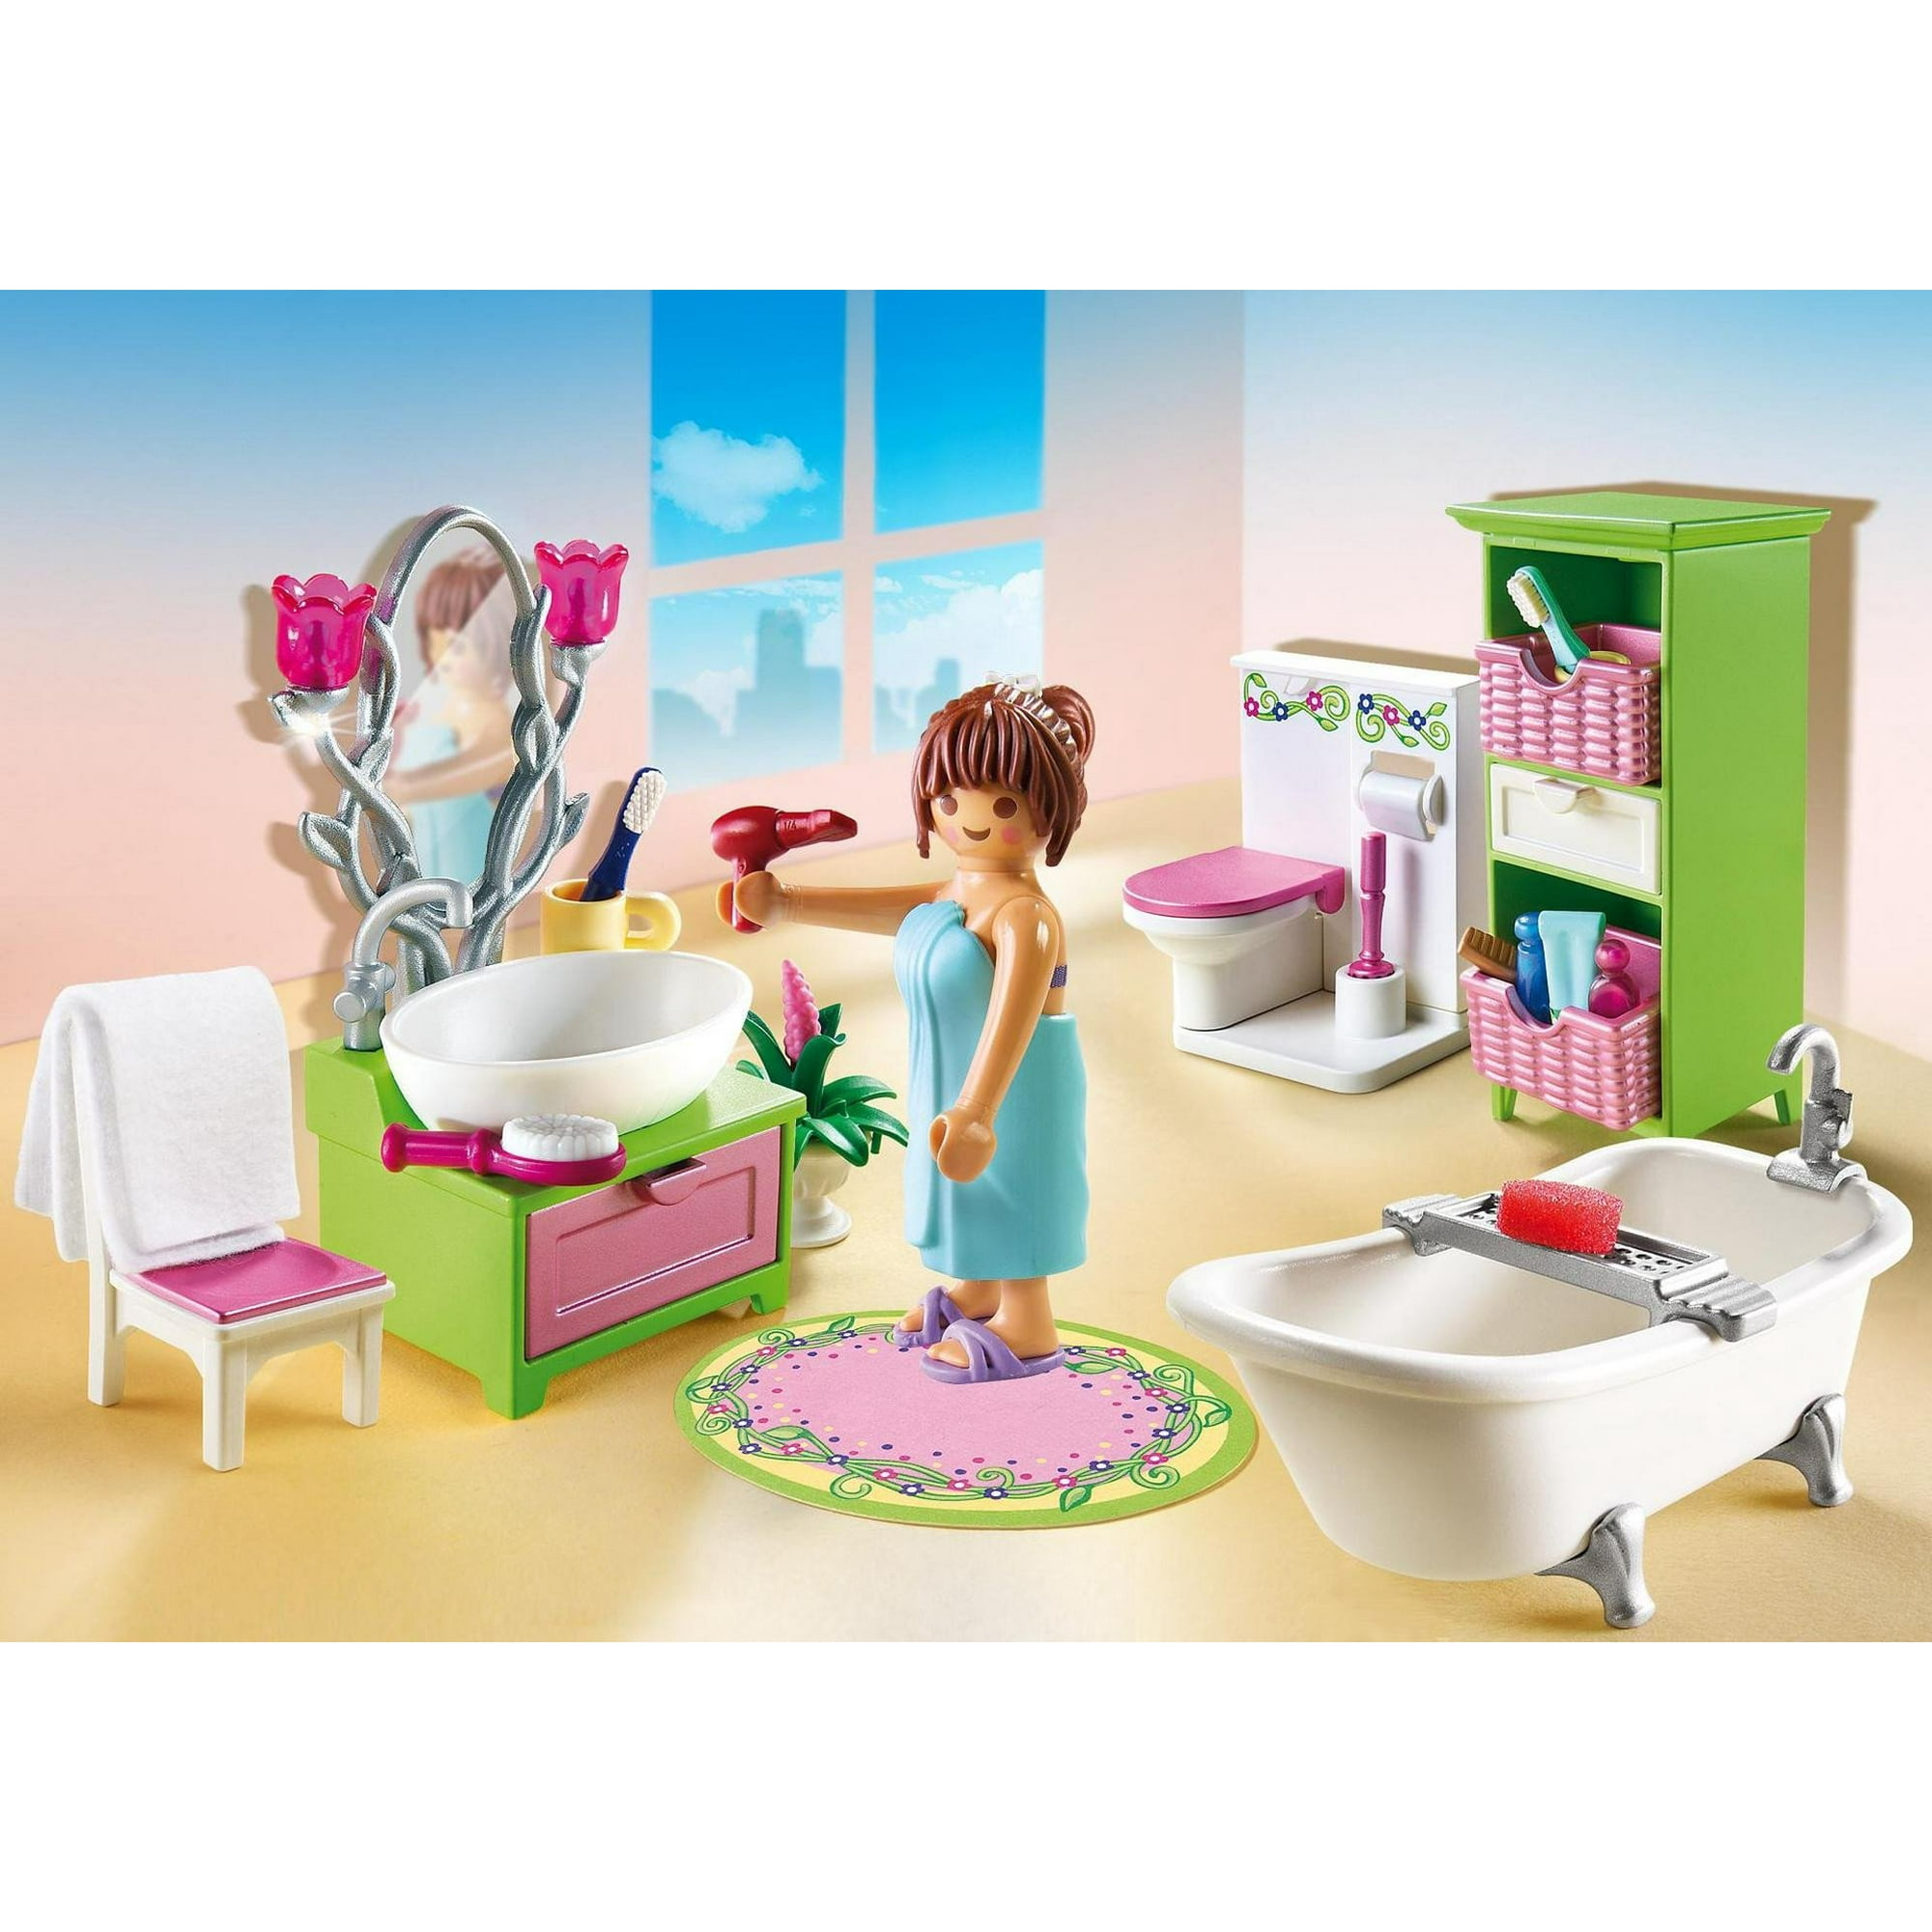 Картинки ванной для детей. Ванная Плеймобил. Ванная комната для девочки. Playmobil ванная комната. Игрушечная ванная комната.